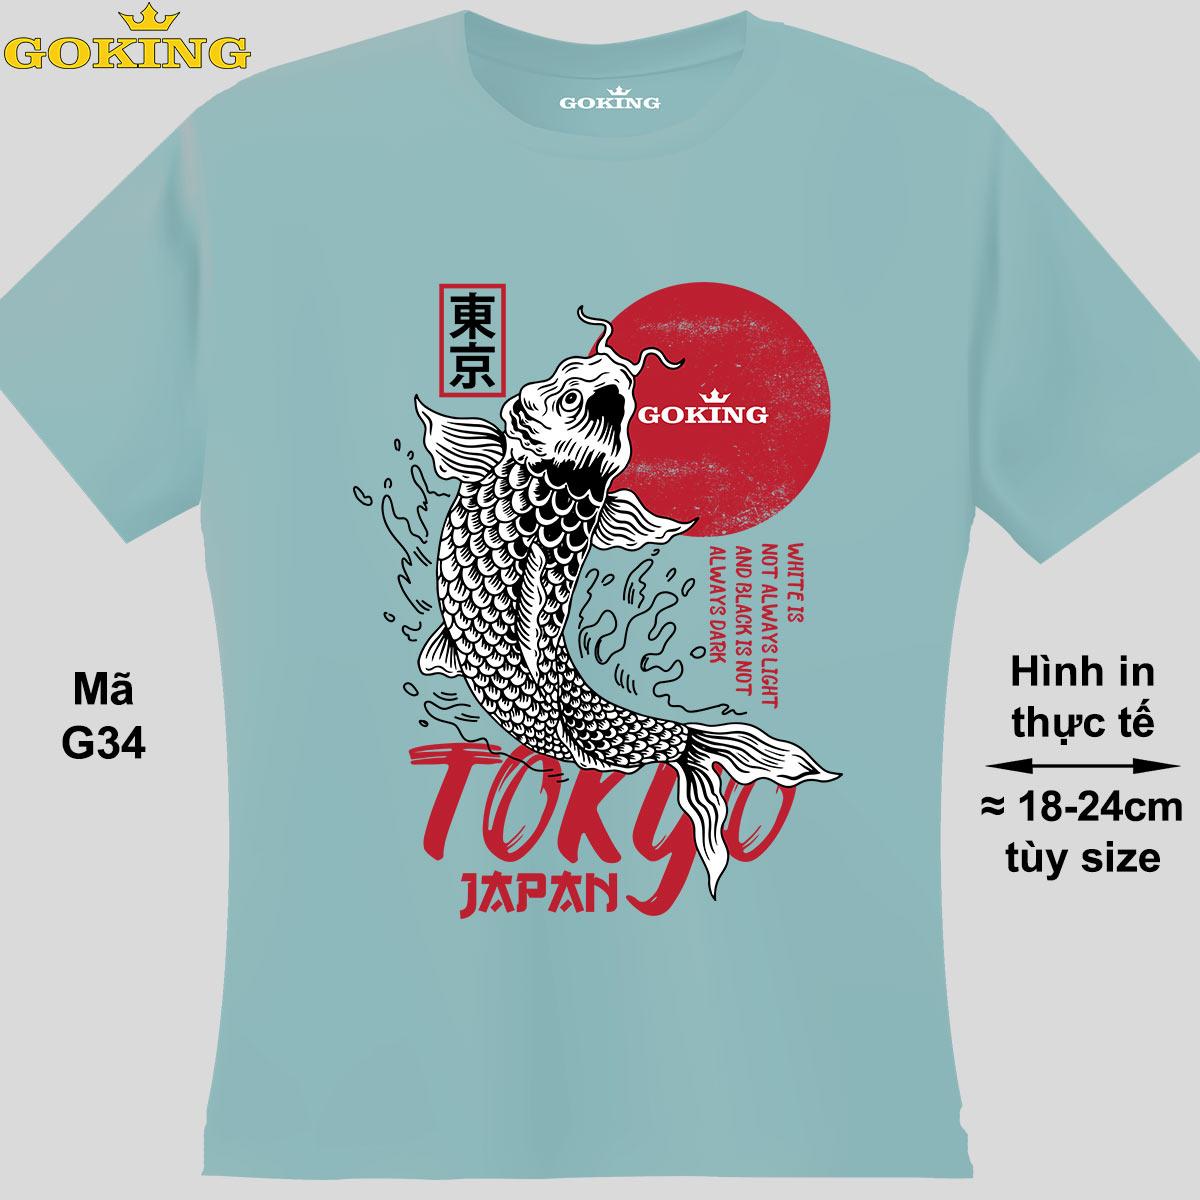 Tokyo Japan, mã G34. Hãy tỏa sáng như kim cương, qua chiếc áo thun Goking siêu hot cho nam nữ trẻ em, áo phông cặp đôi, gia đình, đội nhóm